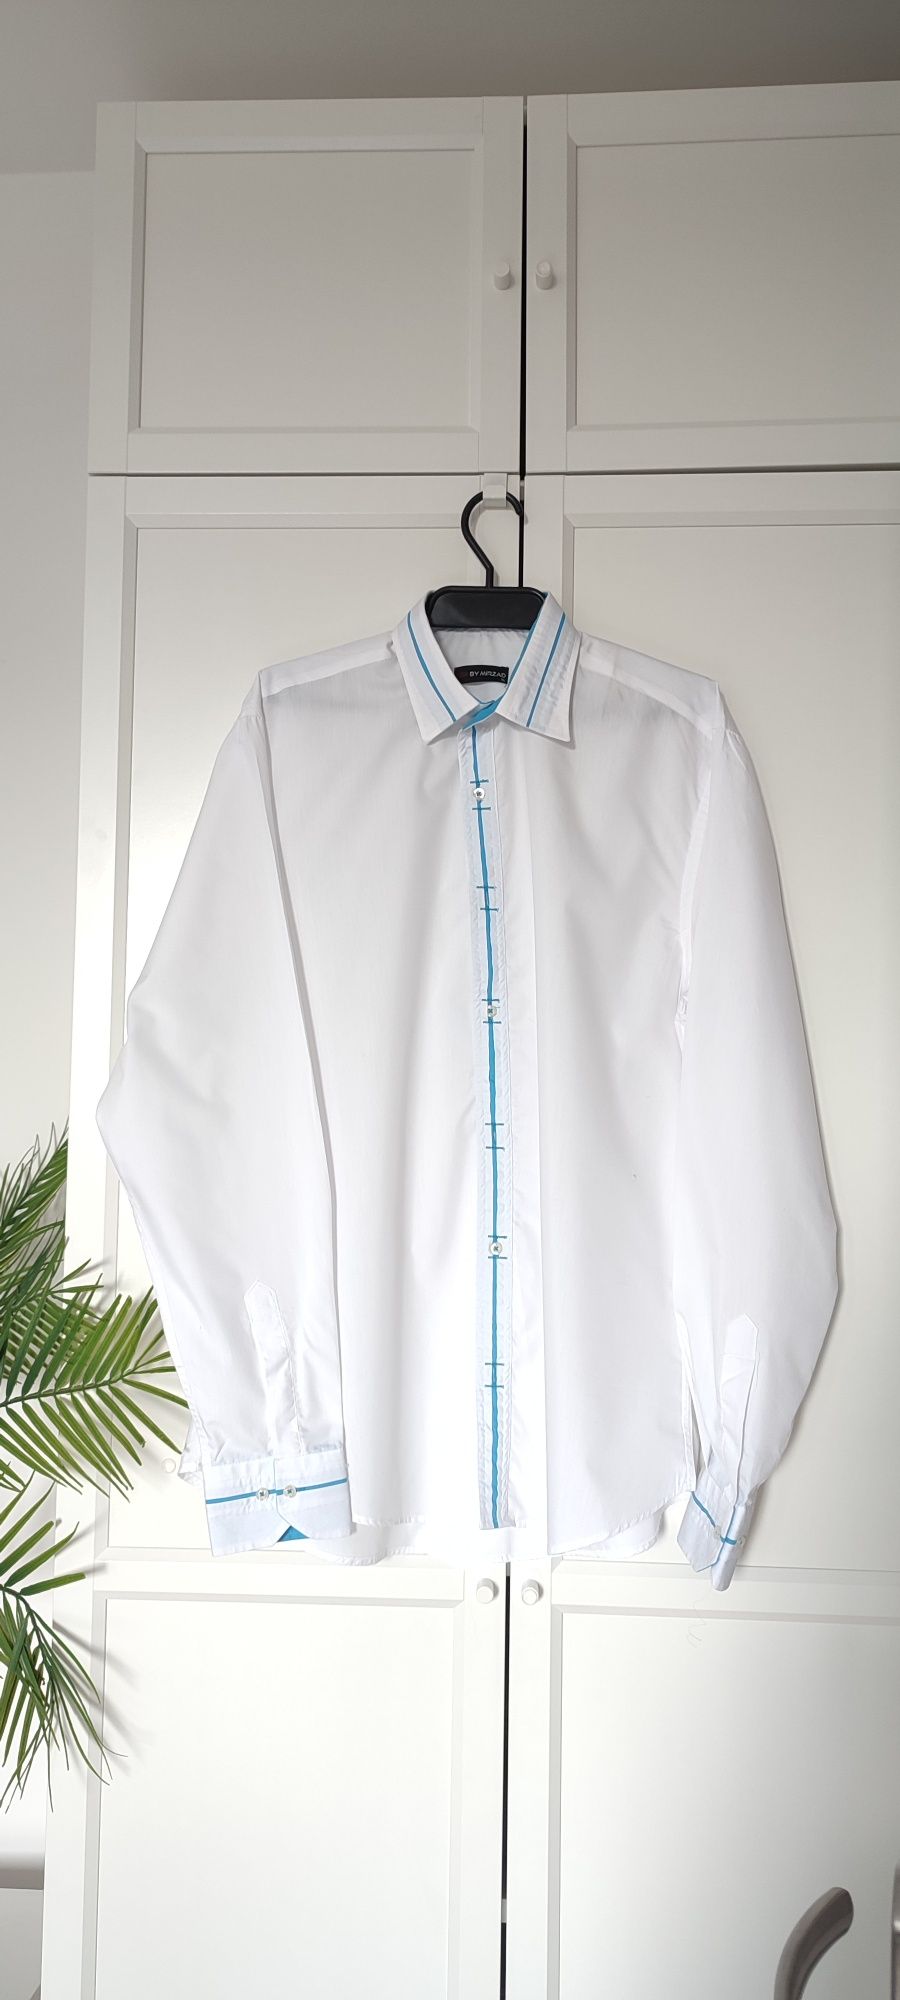 Koszula męska biała na komunię wesele zapinana rozmiar 42 XL jak nowa